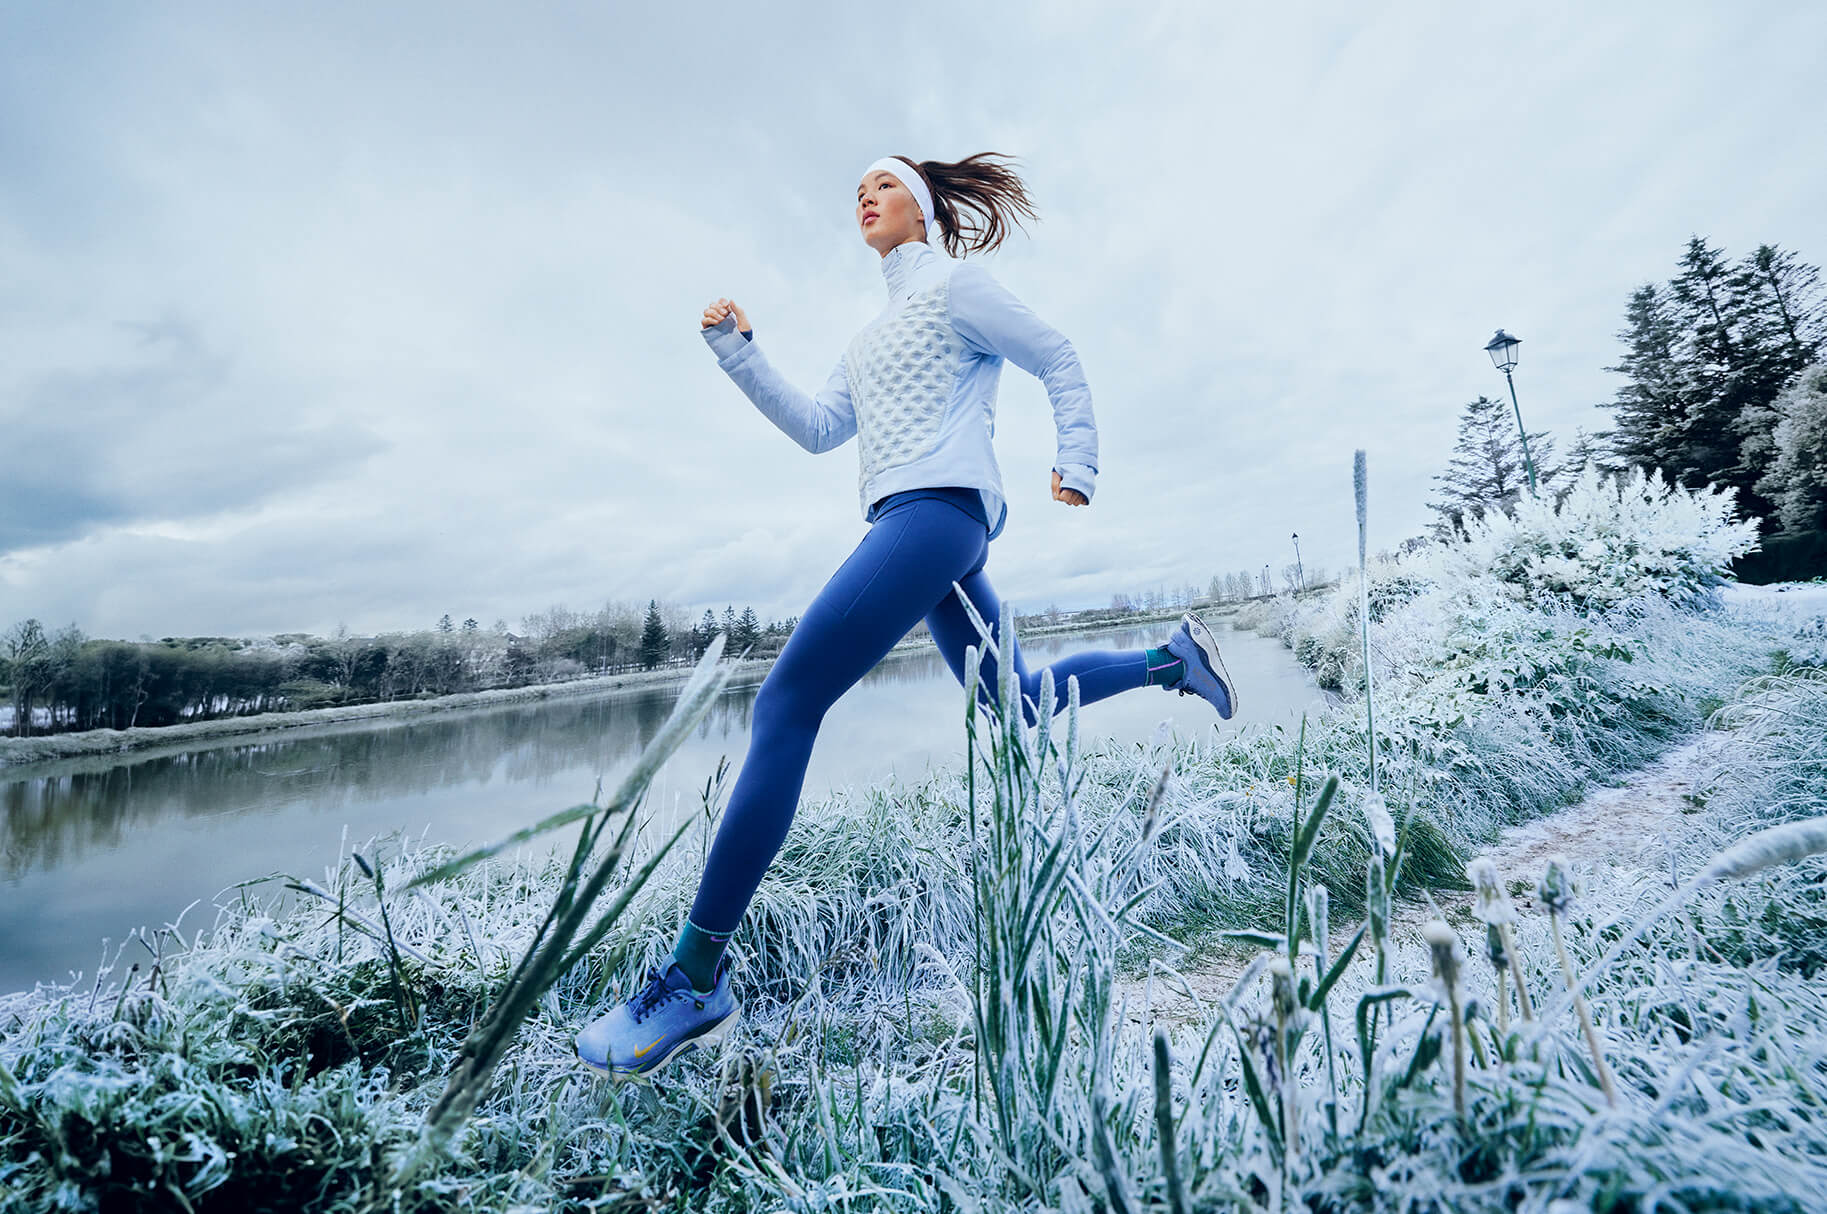 Com pots triar la millor jaqueta o armilla de running Nike per al fred